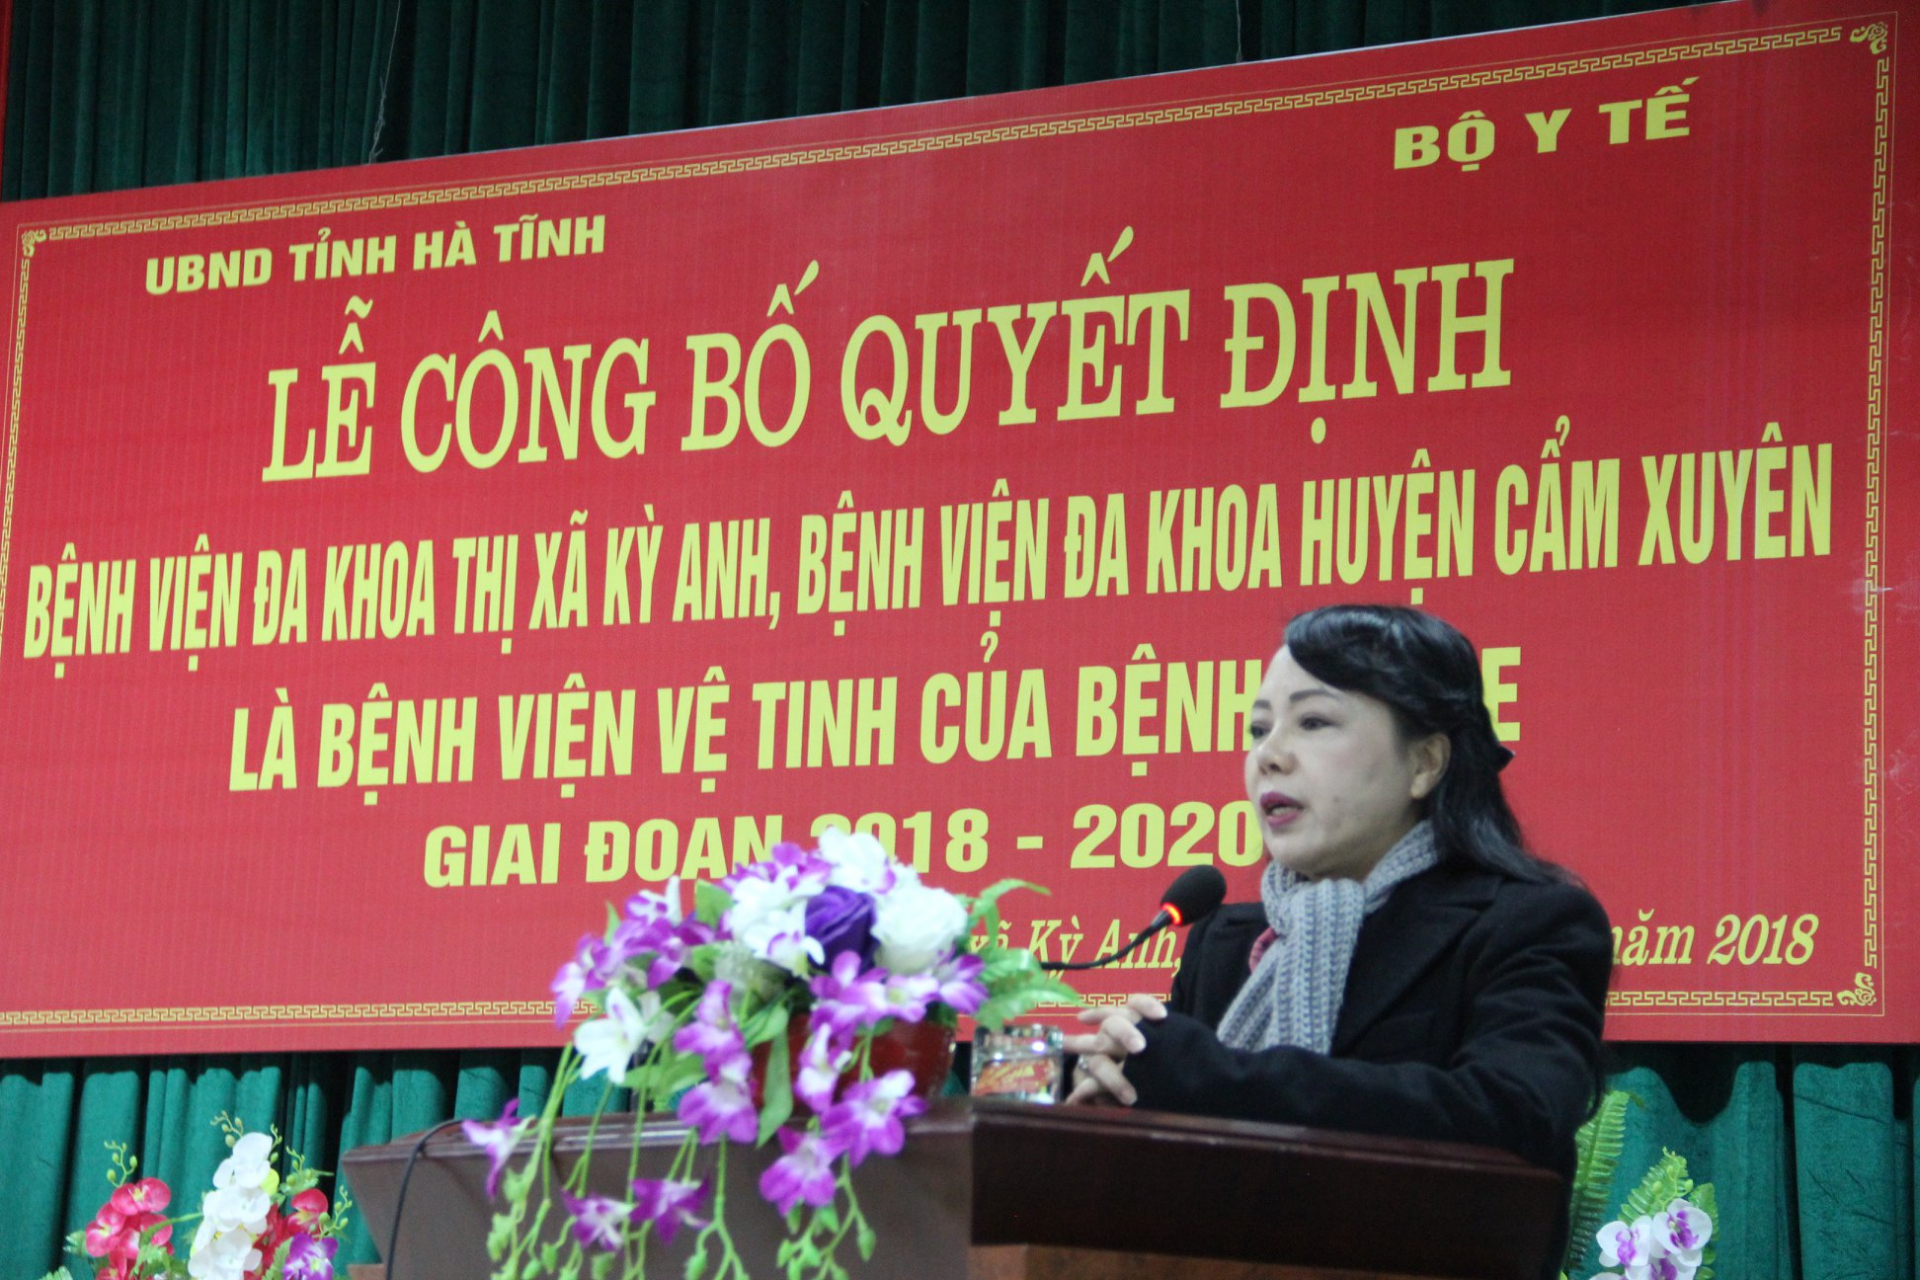 Bộ trưởng Bộ Y tế phát biểu trong Lễ công bố quyết đinh 2 bệnh viện huyện tại Hà Tĩnh là bệnh viện vệ tinh